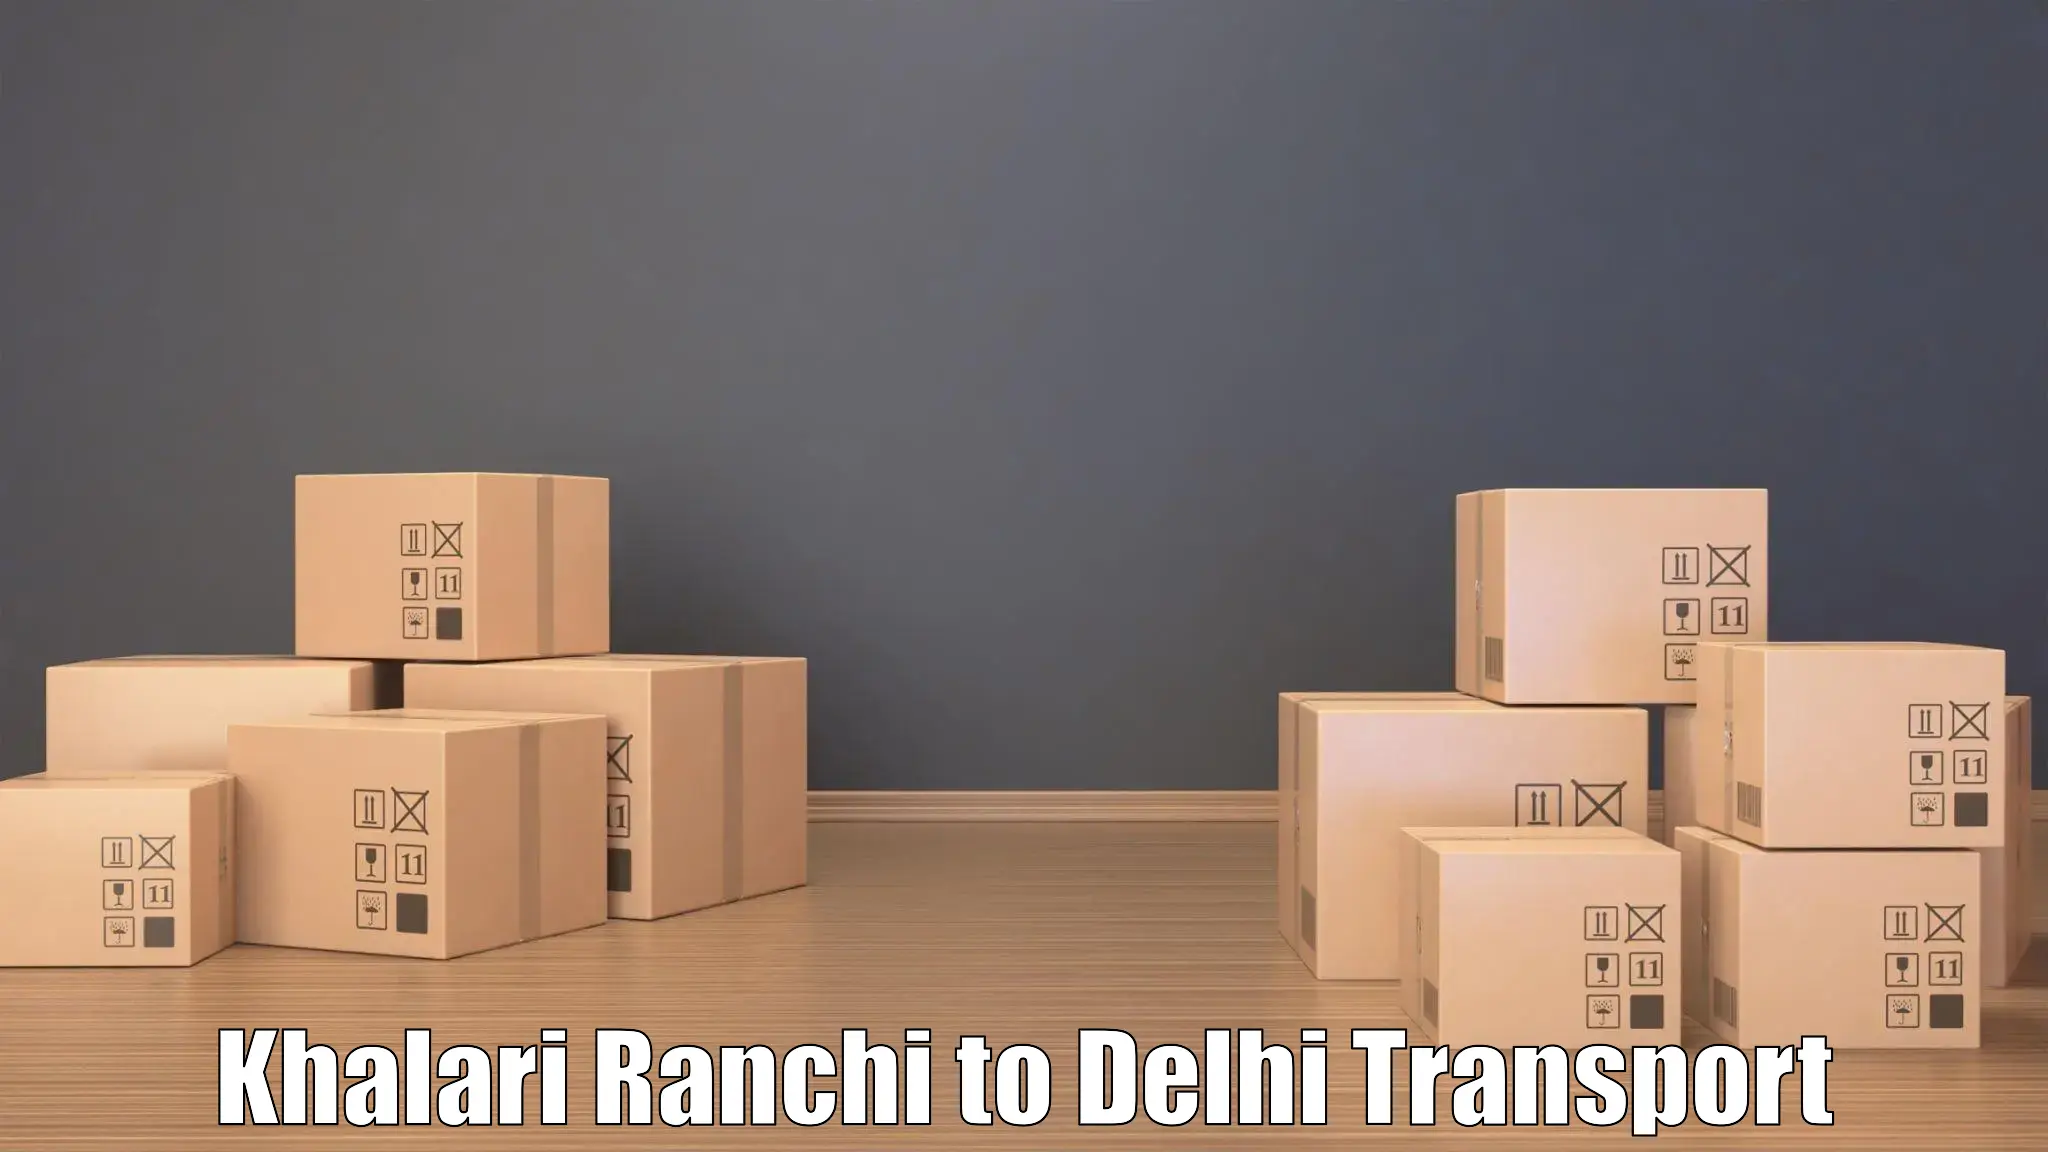 Nationwide transport services Khalari Ranchi to Delhi